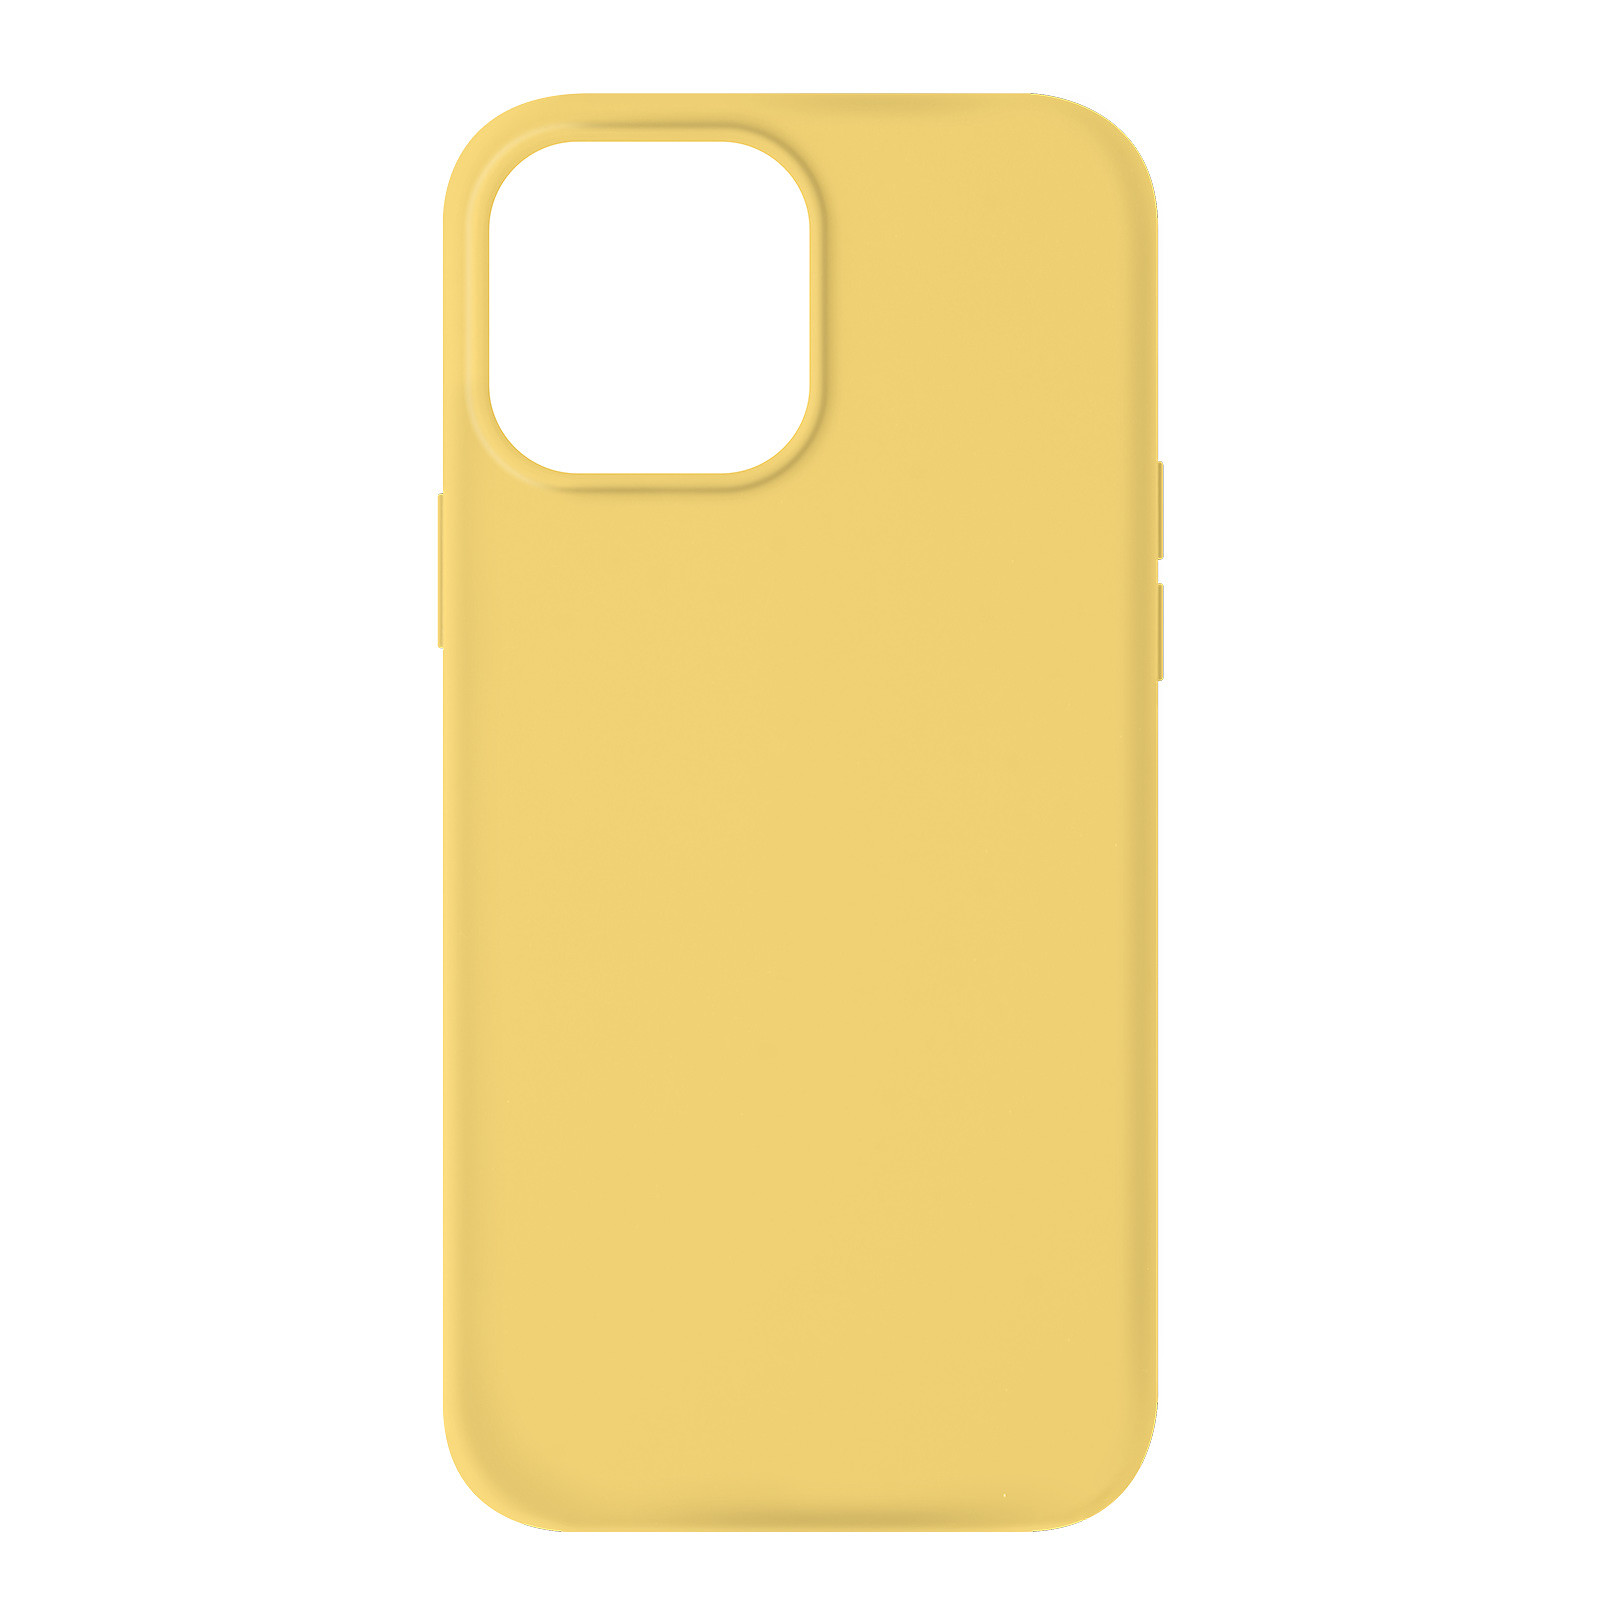 Avizar Coque pour iPhone 13 Pro Max Silicone Semi-rigide Finition Soft-touch jaune - Coque telephone Avizar